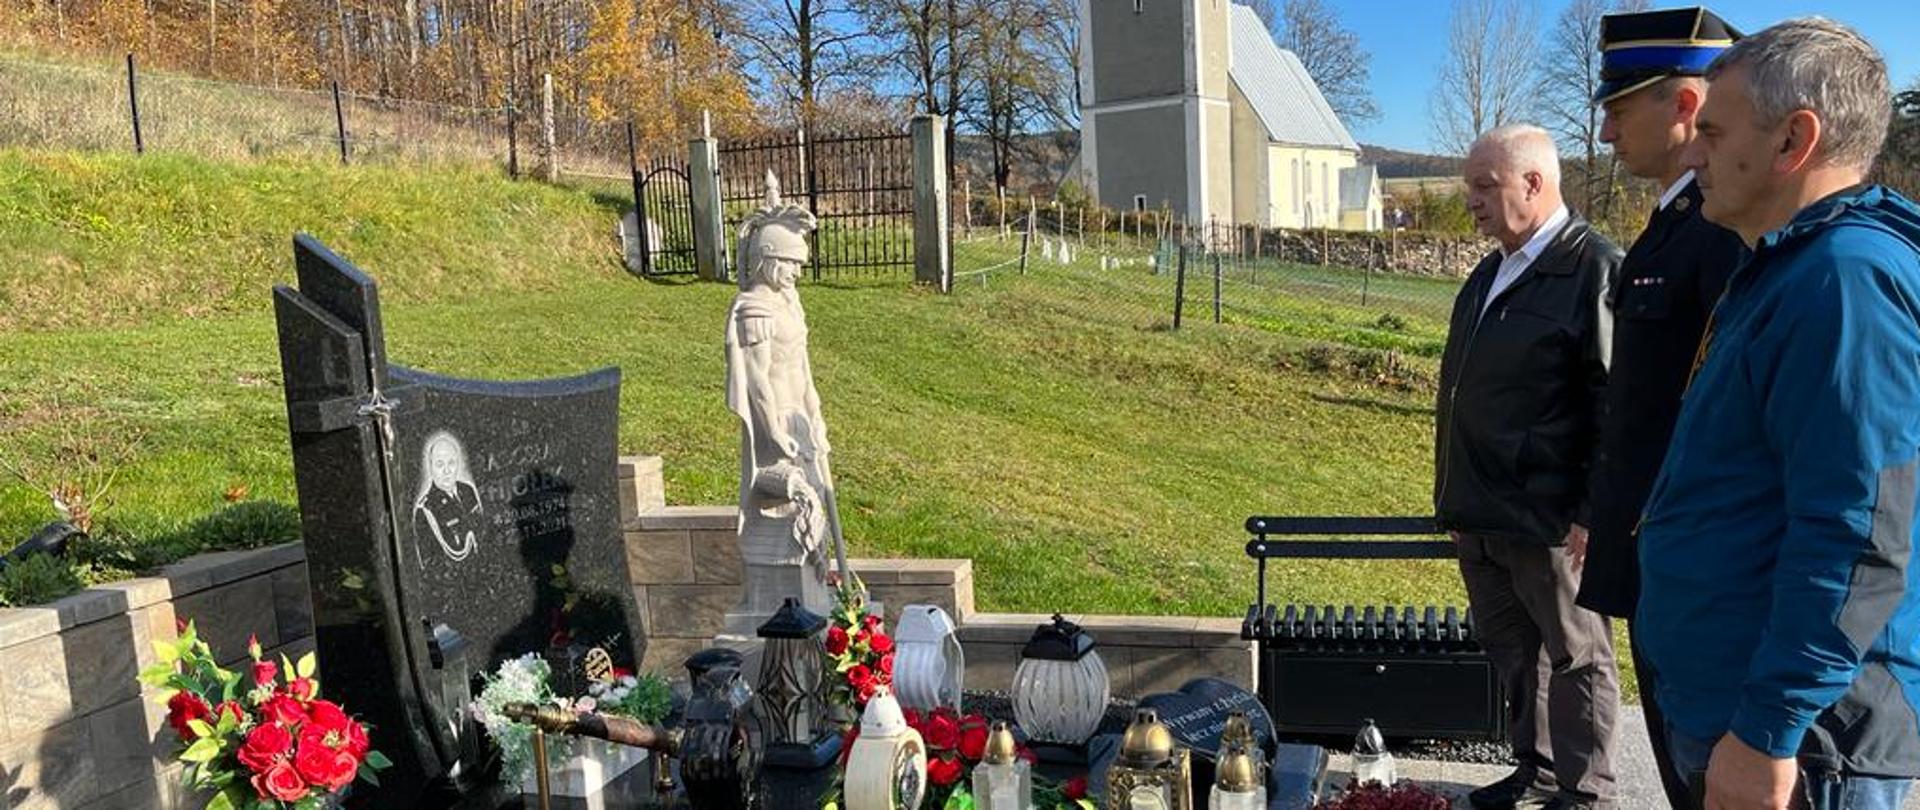 Na zdjęciu widać trzech mężczyzn stojących obok groby zmarłego funkcjonariusza. Zdajecie wykonane na cmentarzu. Grób śp. bryg Radosława Fijołka. 